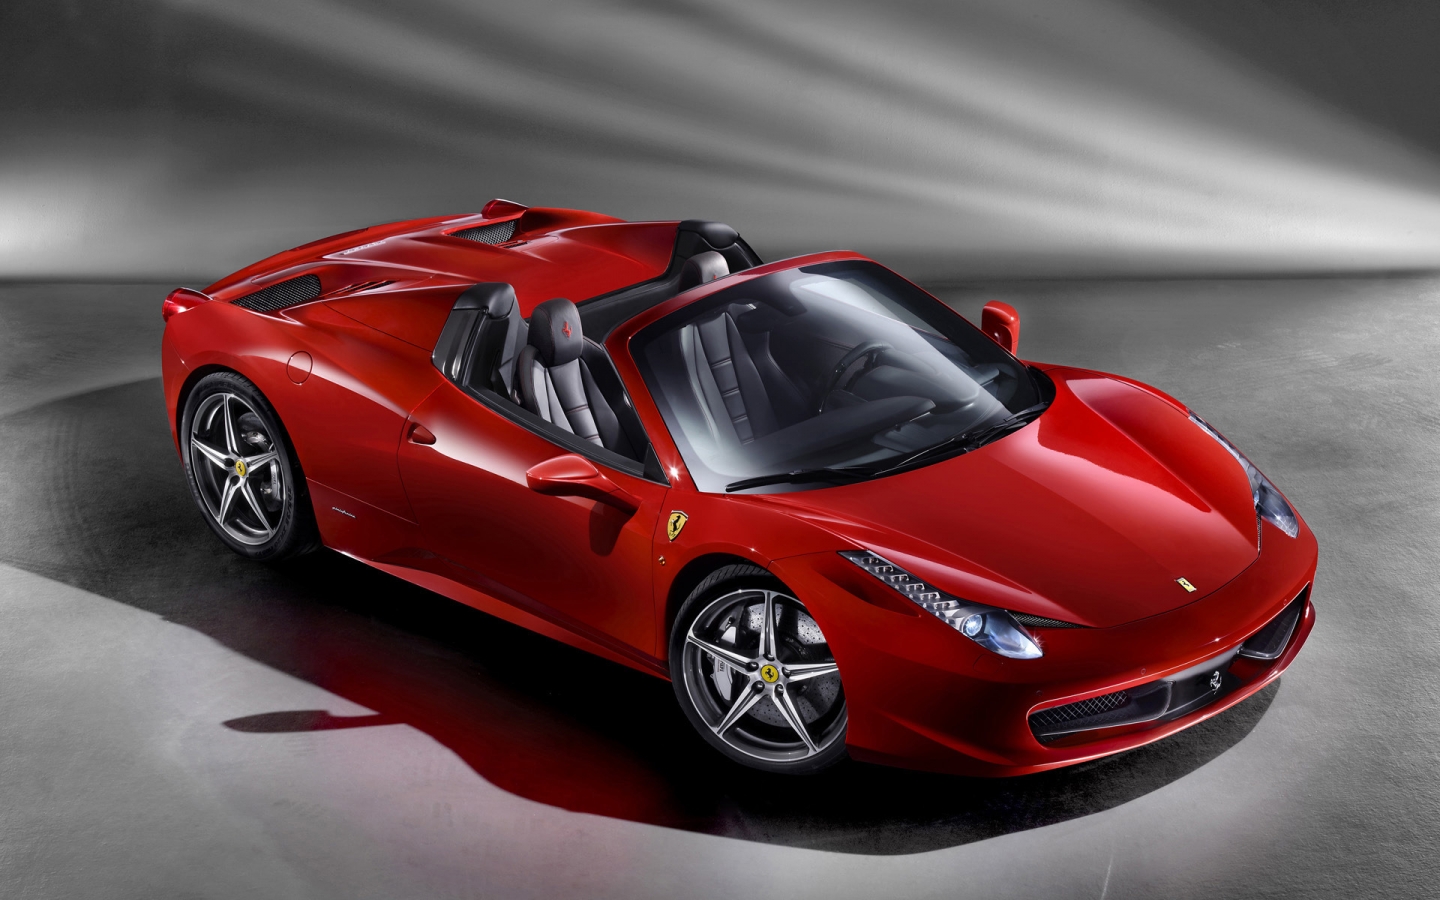 2012 Ferrari 458 Spider Studio for 1440 x 900 widescreen resolution